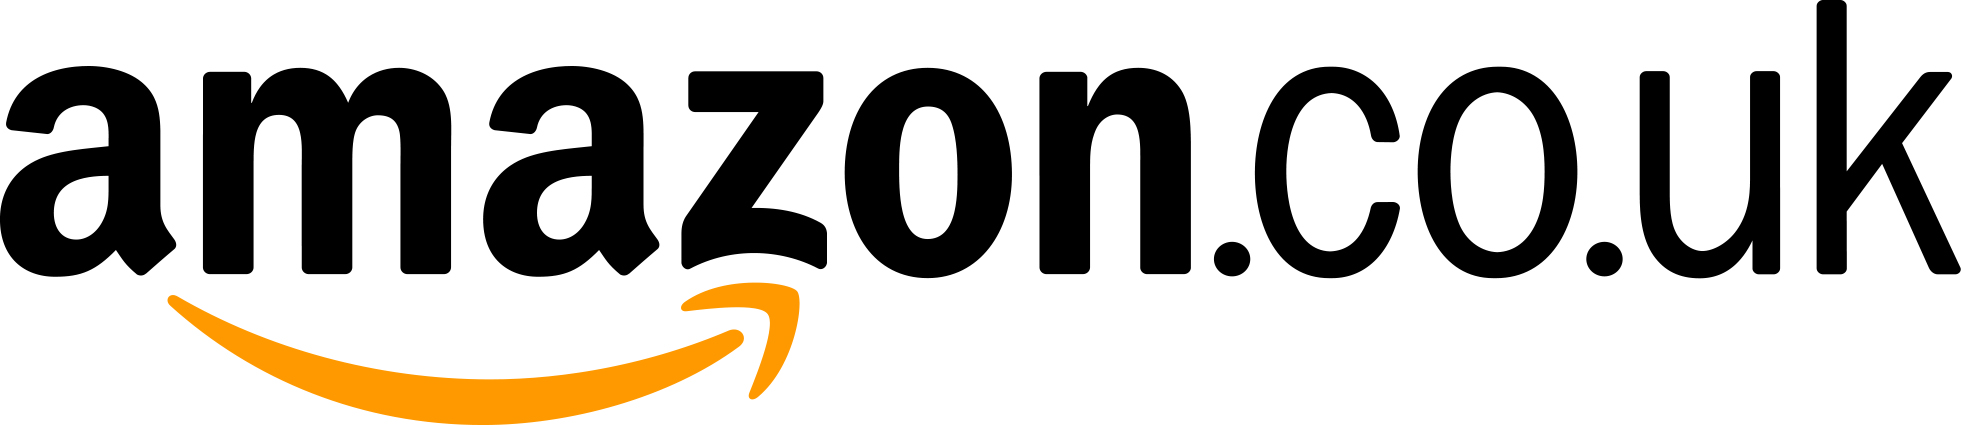 Images - Logos | Amazon UK